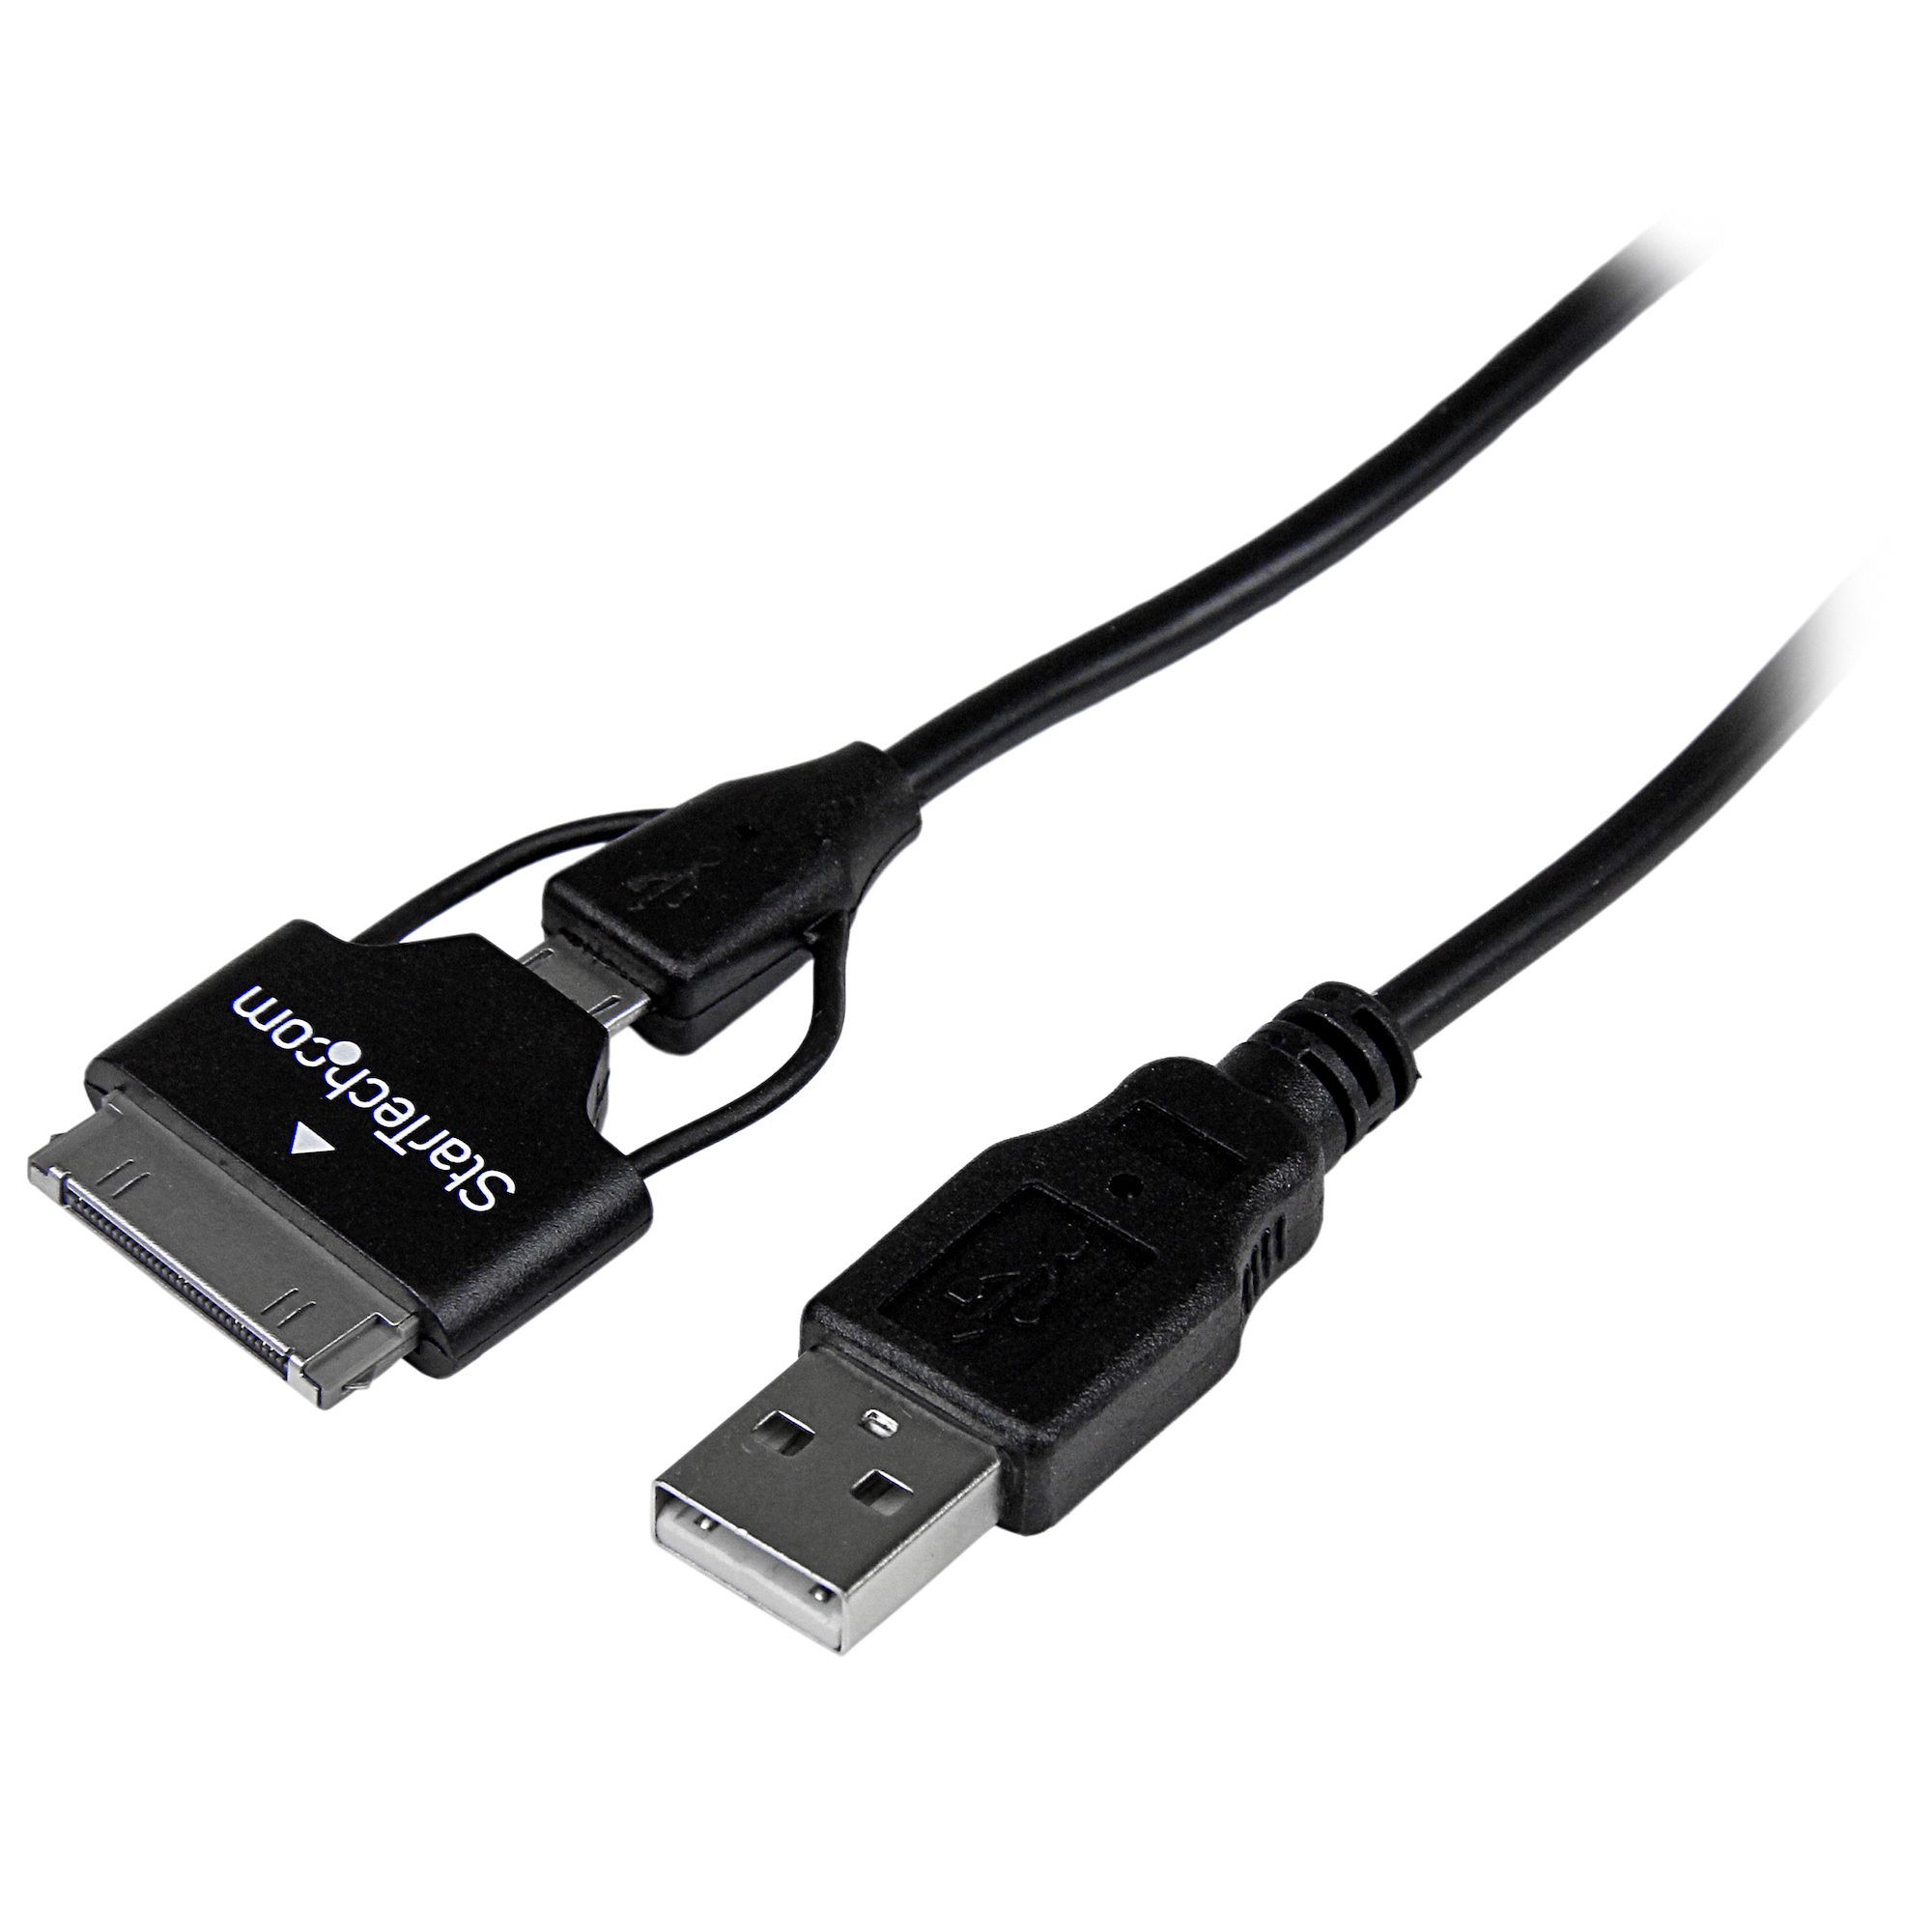 Usb samsung купить. Переходник Samsung 30 Pin Micro USB. Самсунг галакси таб 2 USB. Samsung USB Combo Cable. USB кабель Samsung x160.